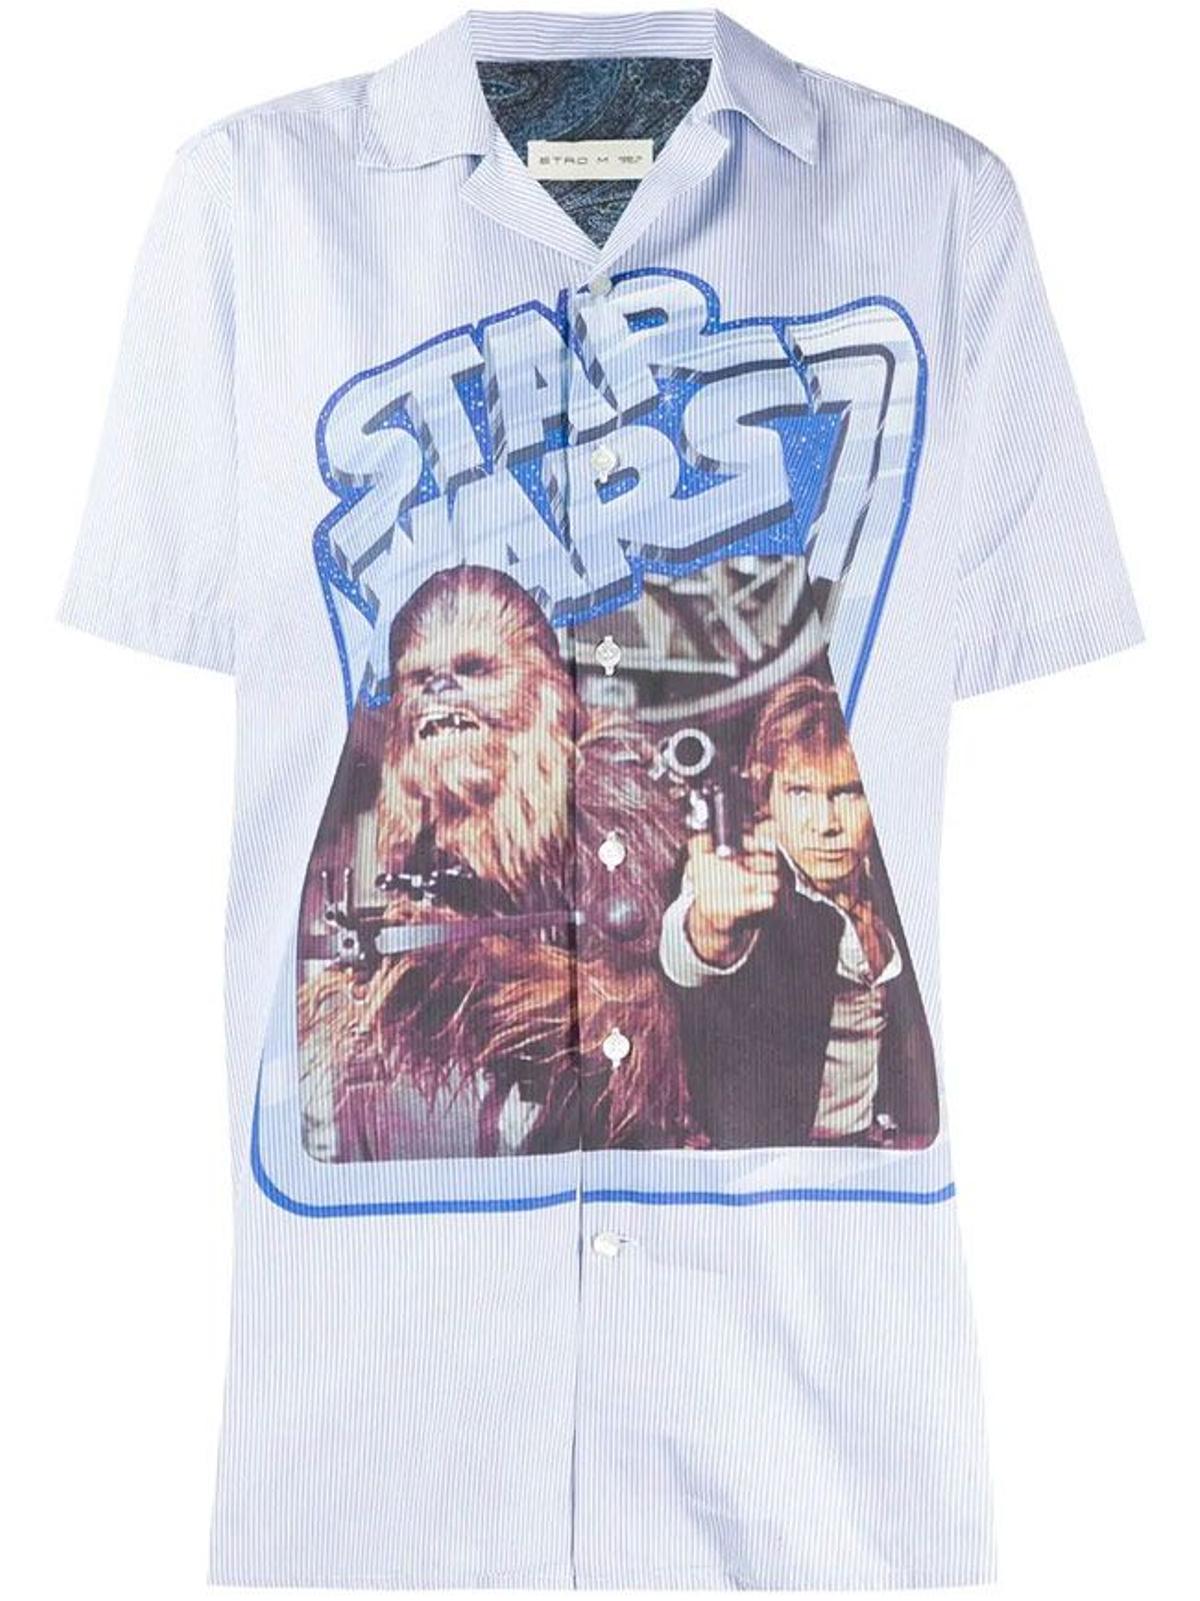 Camisa con estampado de 'Star Wars', de Etro